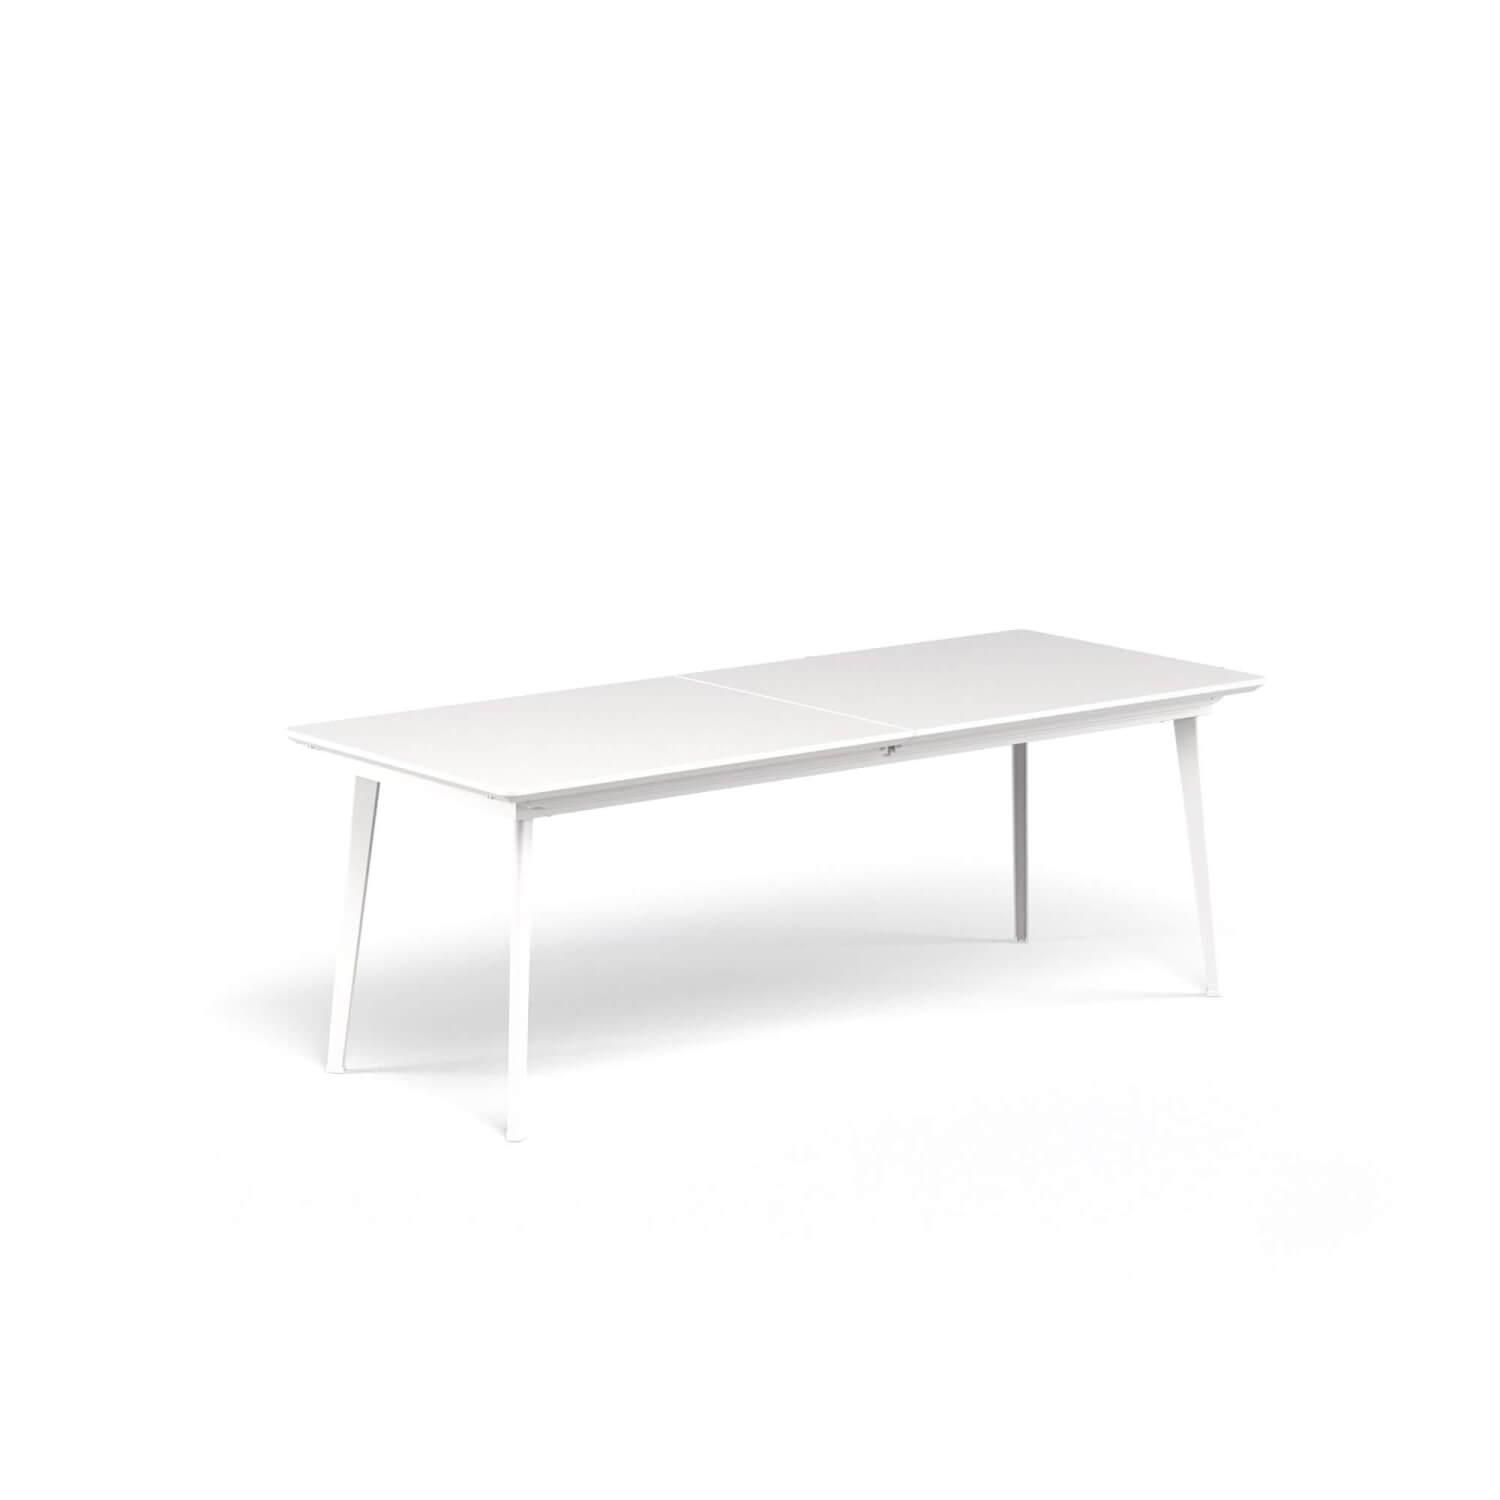 Outdoor Tisch Plus4 Imperial Balcony  Mit Auszug Farbe 23 Bianco Opaco Weiß Aus Stahl Ohne Stühle